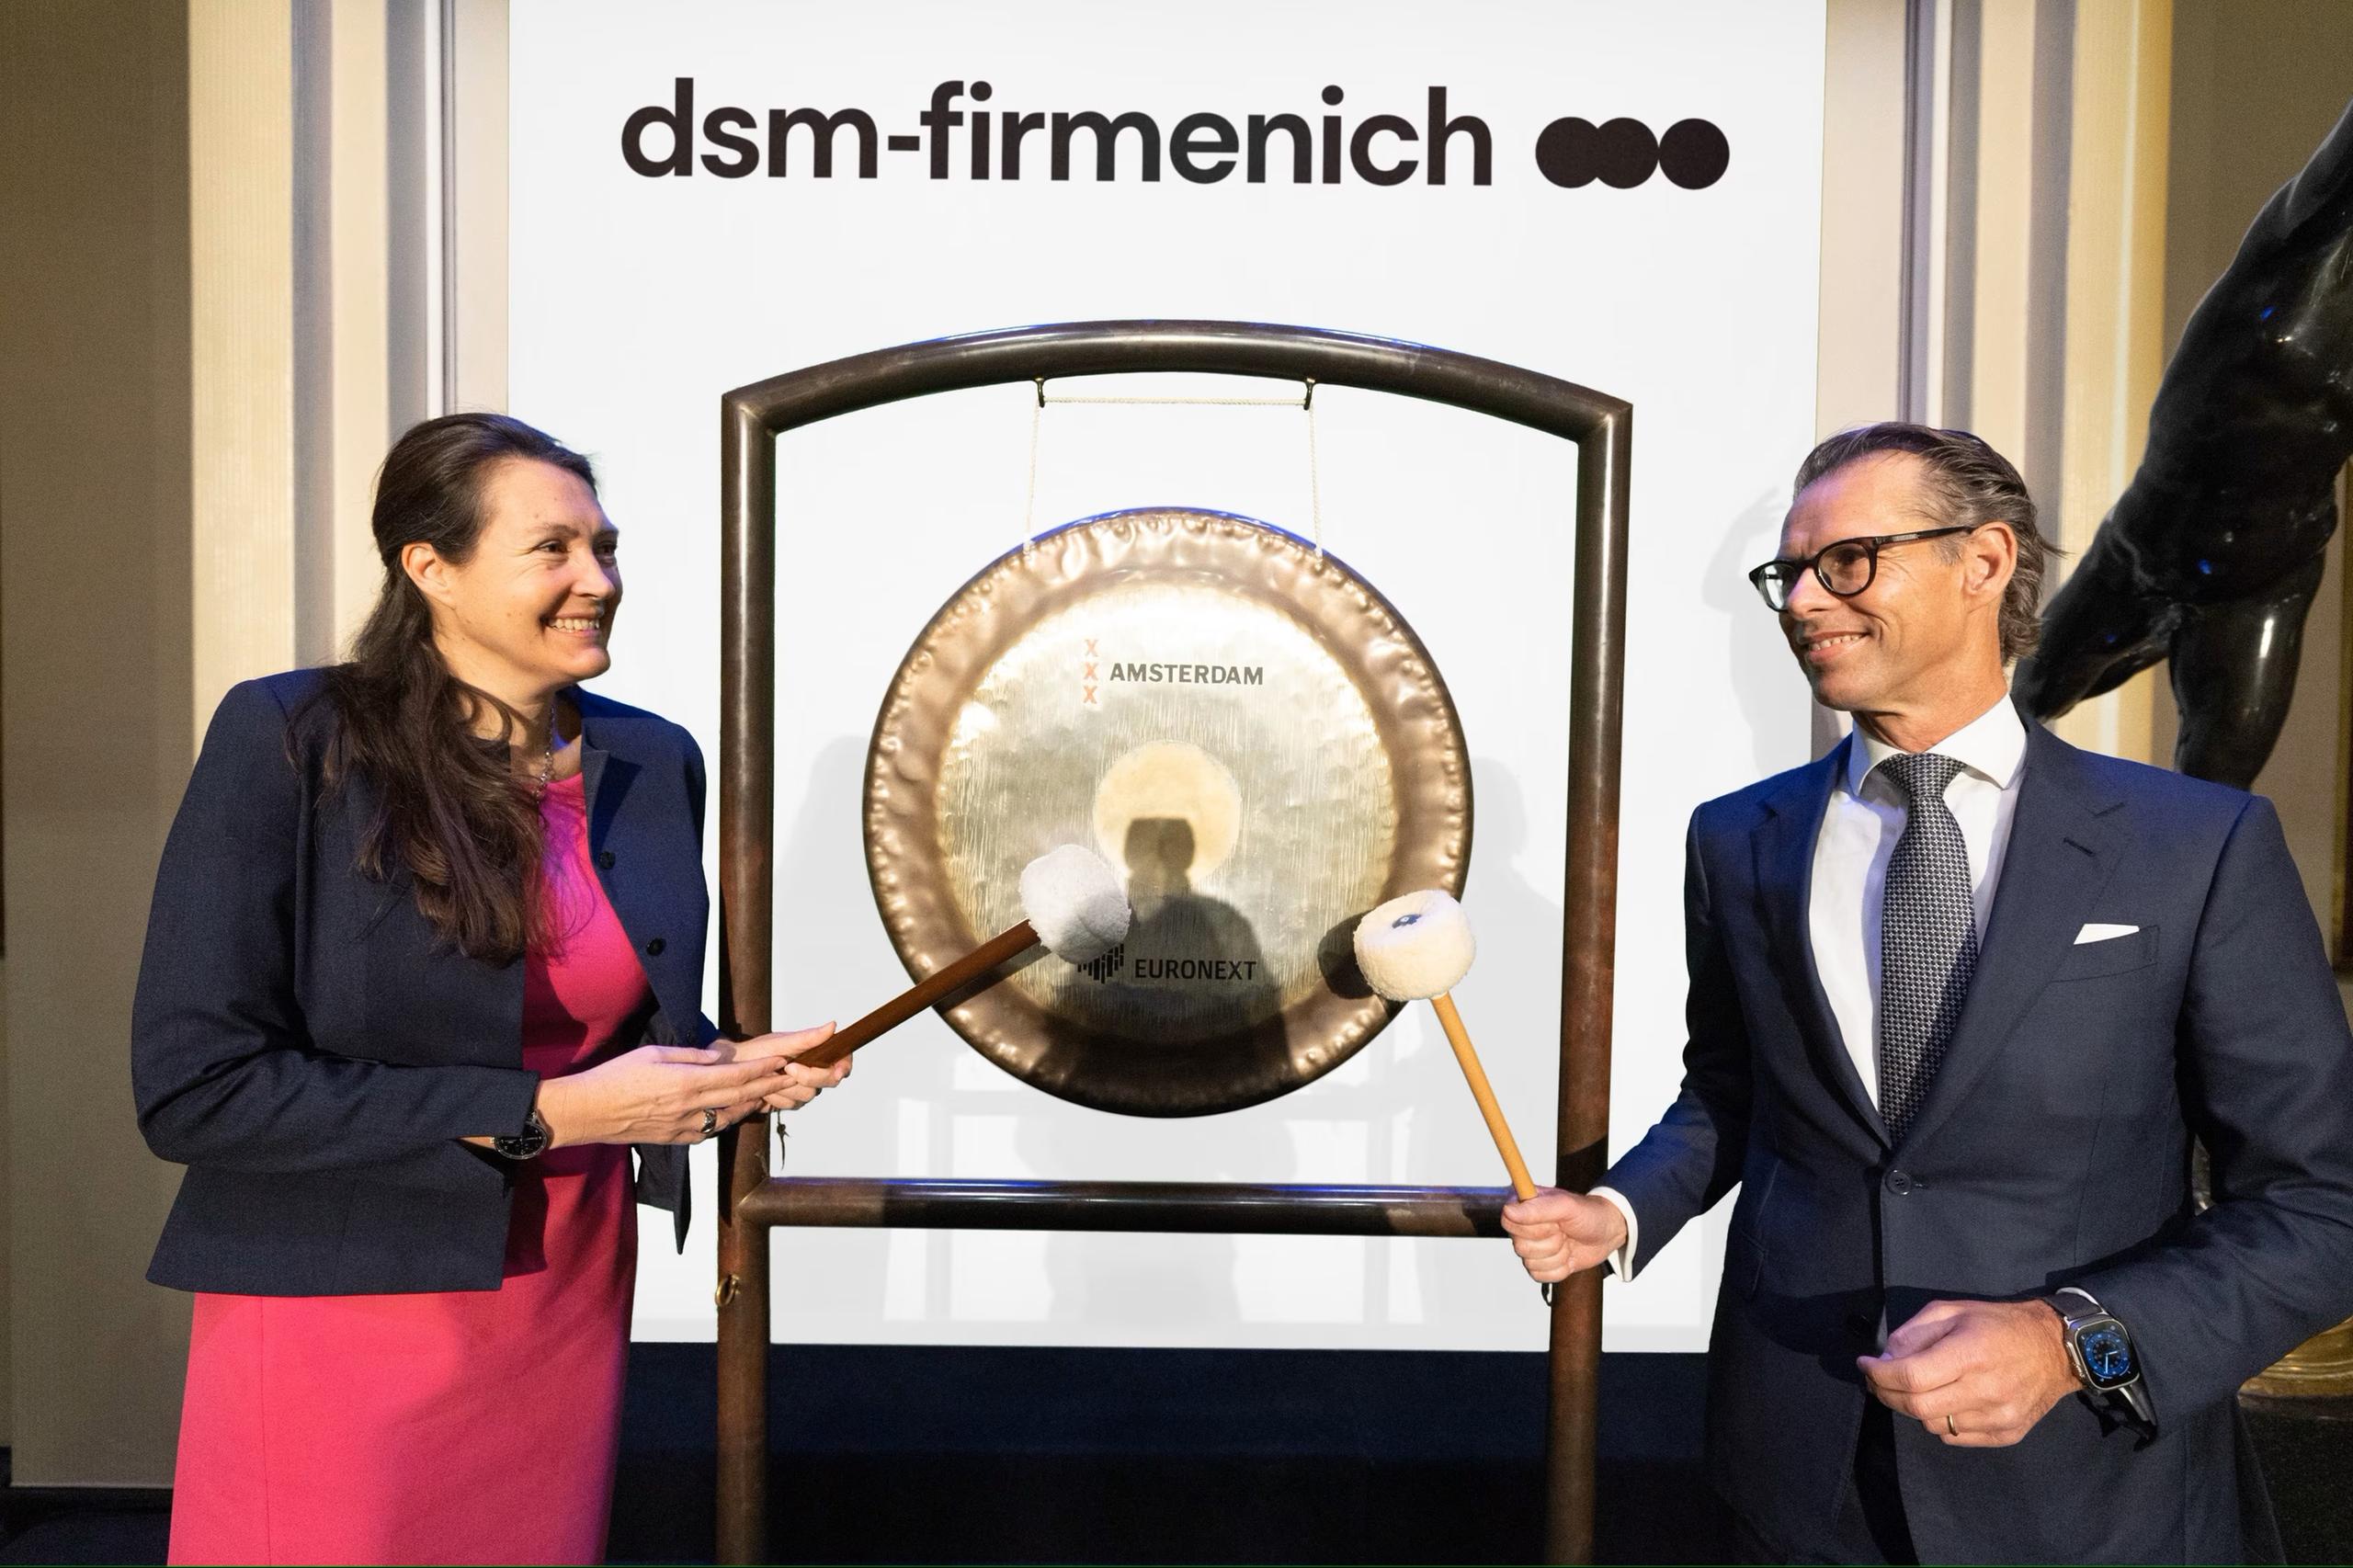 DSM Firmenich